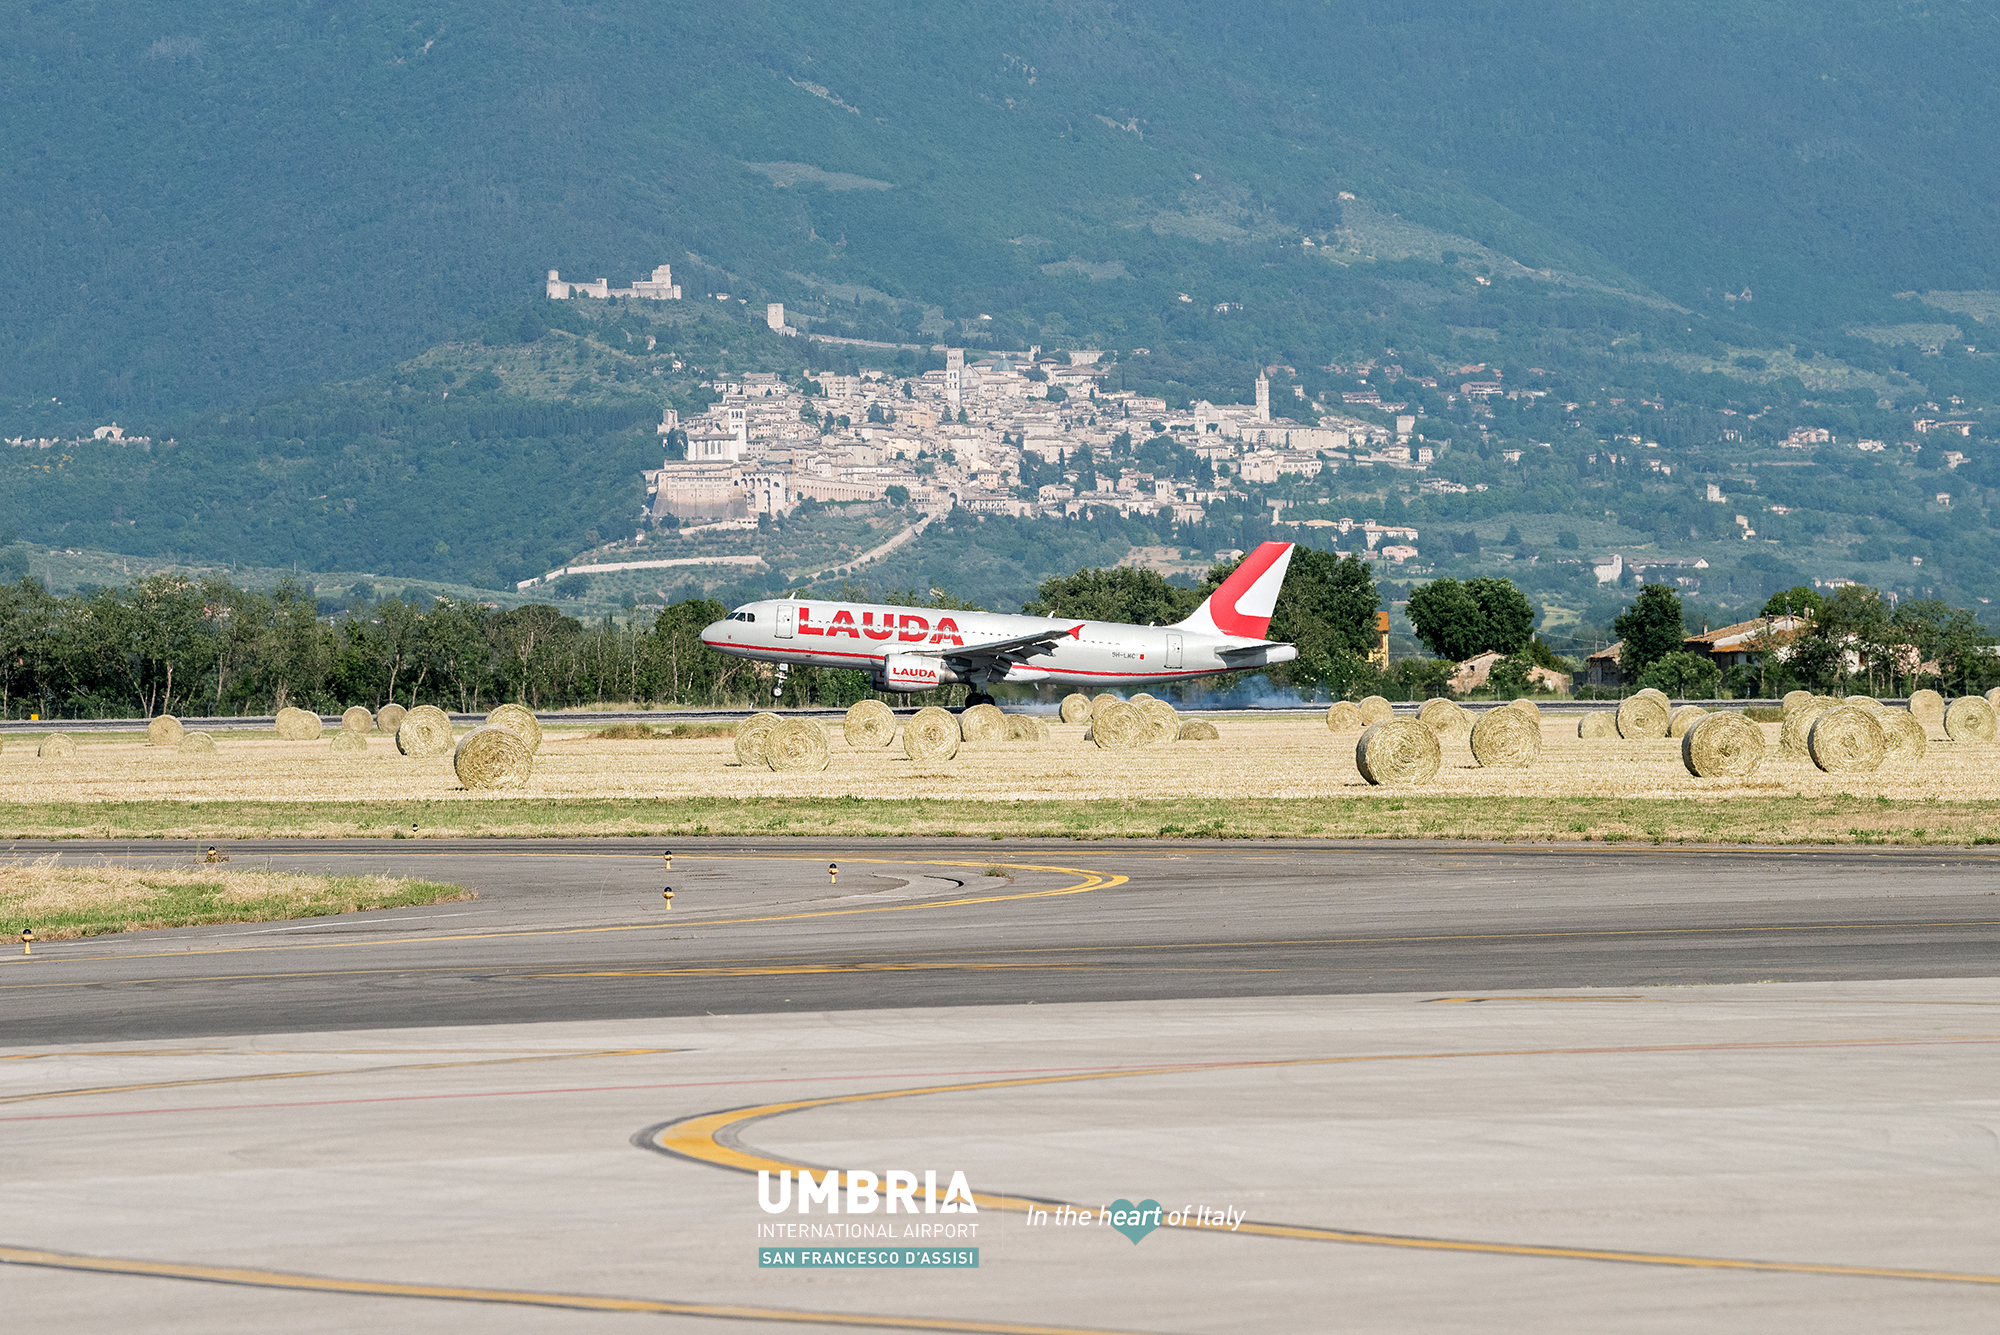 Aeroporto Umbria: a Pasqua traffico record con oltre 14mila passeggeri